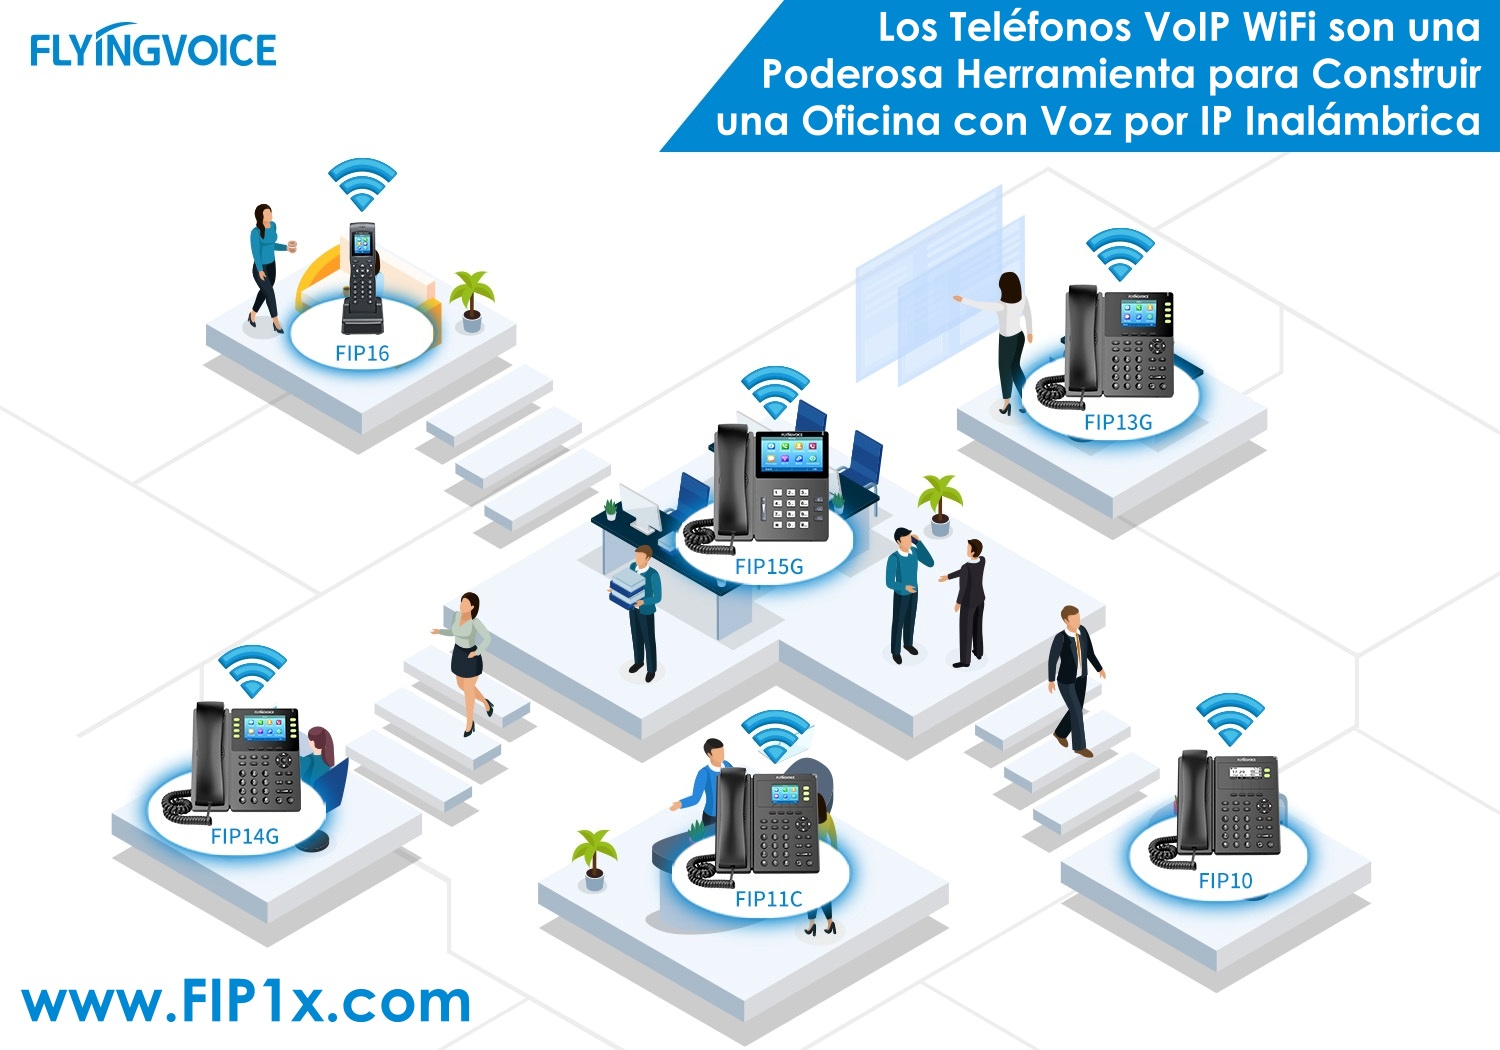 Flyingvoice Telefonos Serie FIP1x es una Herramienta poderosa para Construir una Oficina VoIP Inalambrica